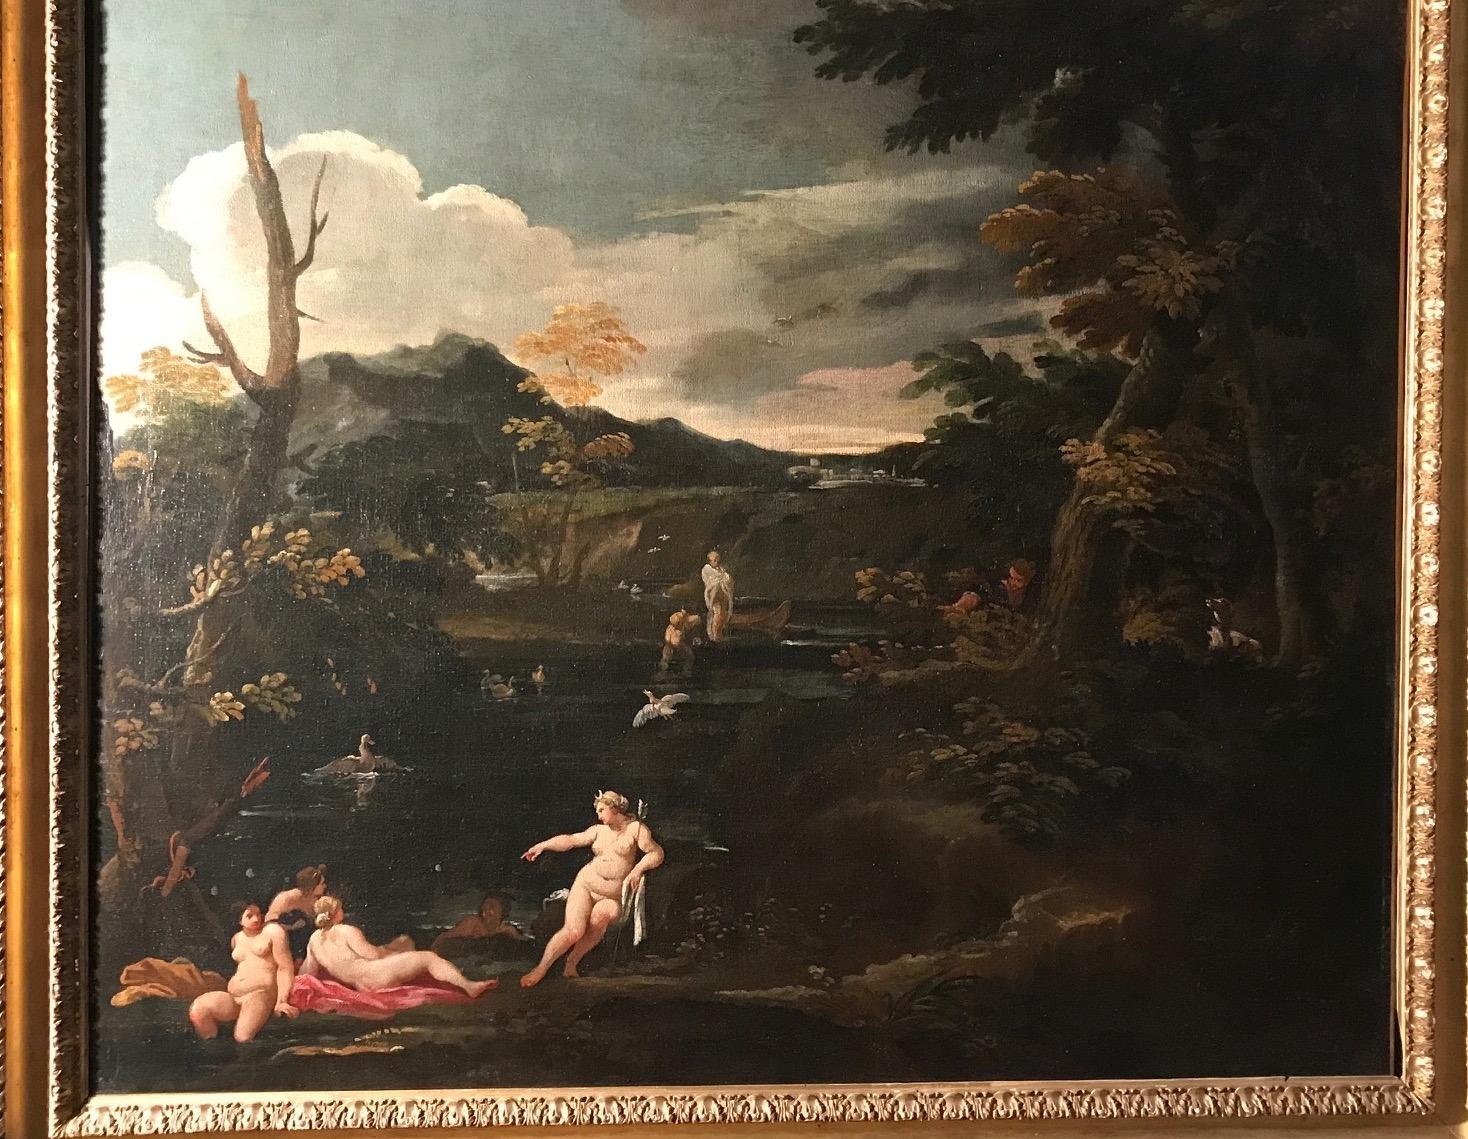  Landschaft mit einer mythologischen Geschichte von Diana und Actaeon 1610 (Barock), Painting, von Giovanni Battista Viola